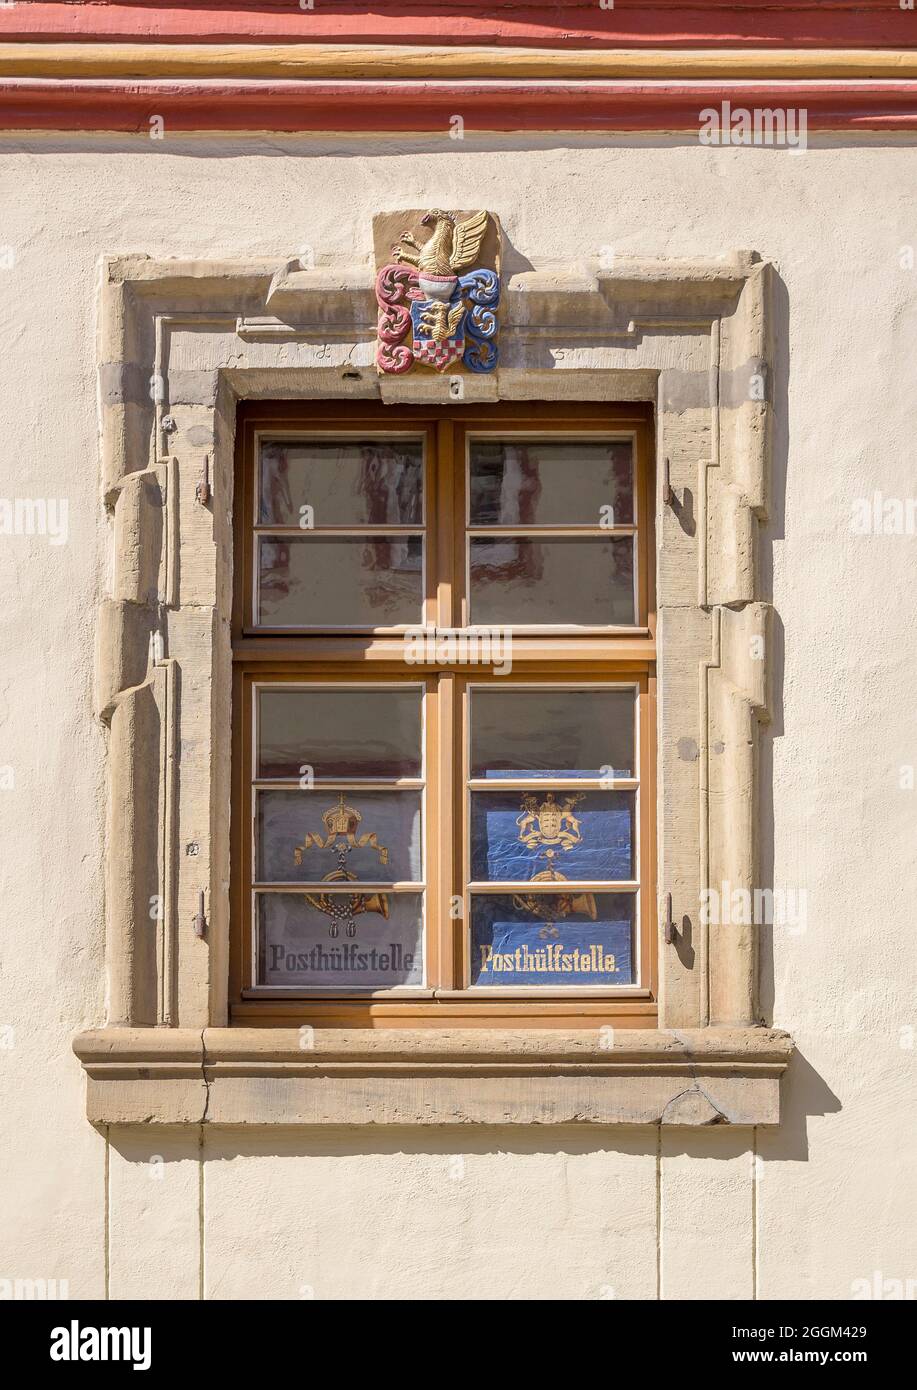 Deutschland, Baden-Württemberg, Kraichtal-Gochsheim, altes historisches Fenster mit Plakat: Posthülfstelle. Stockfoto